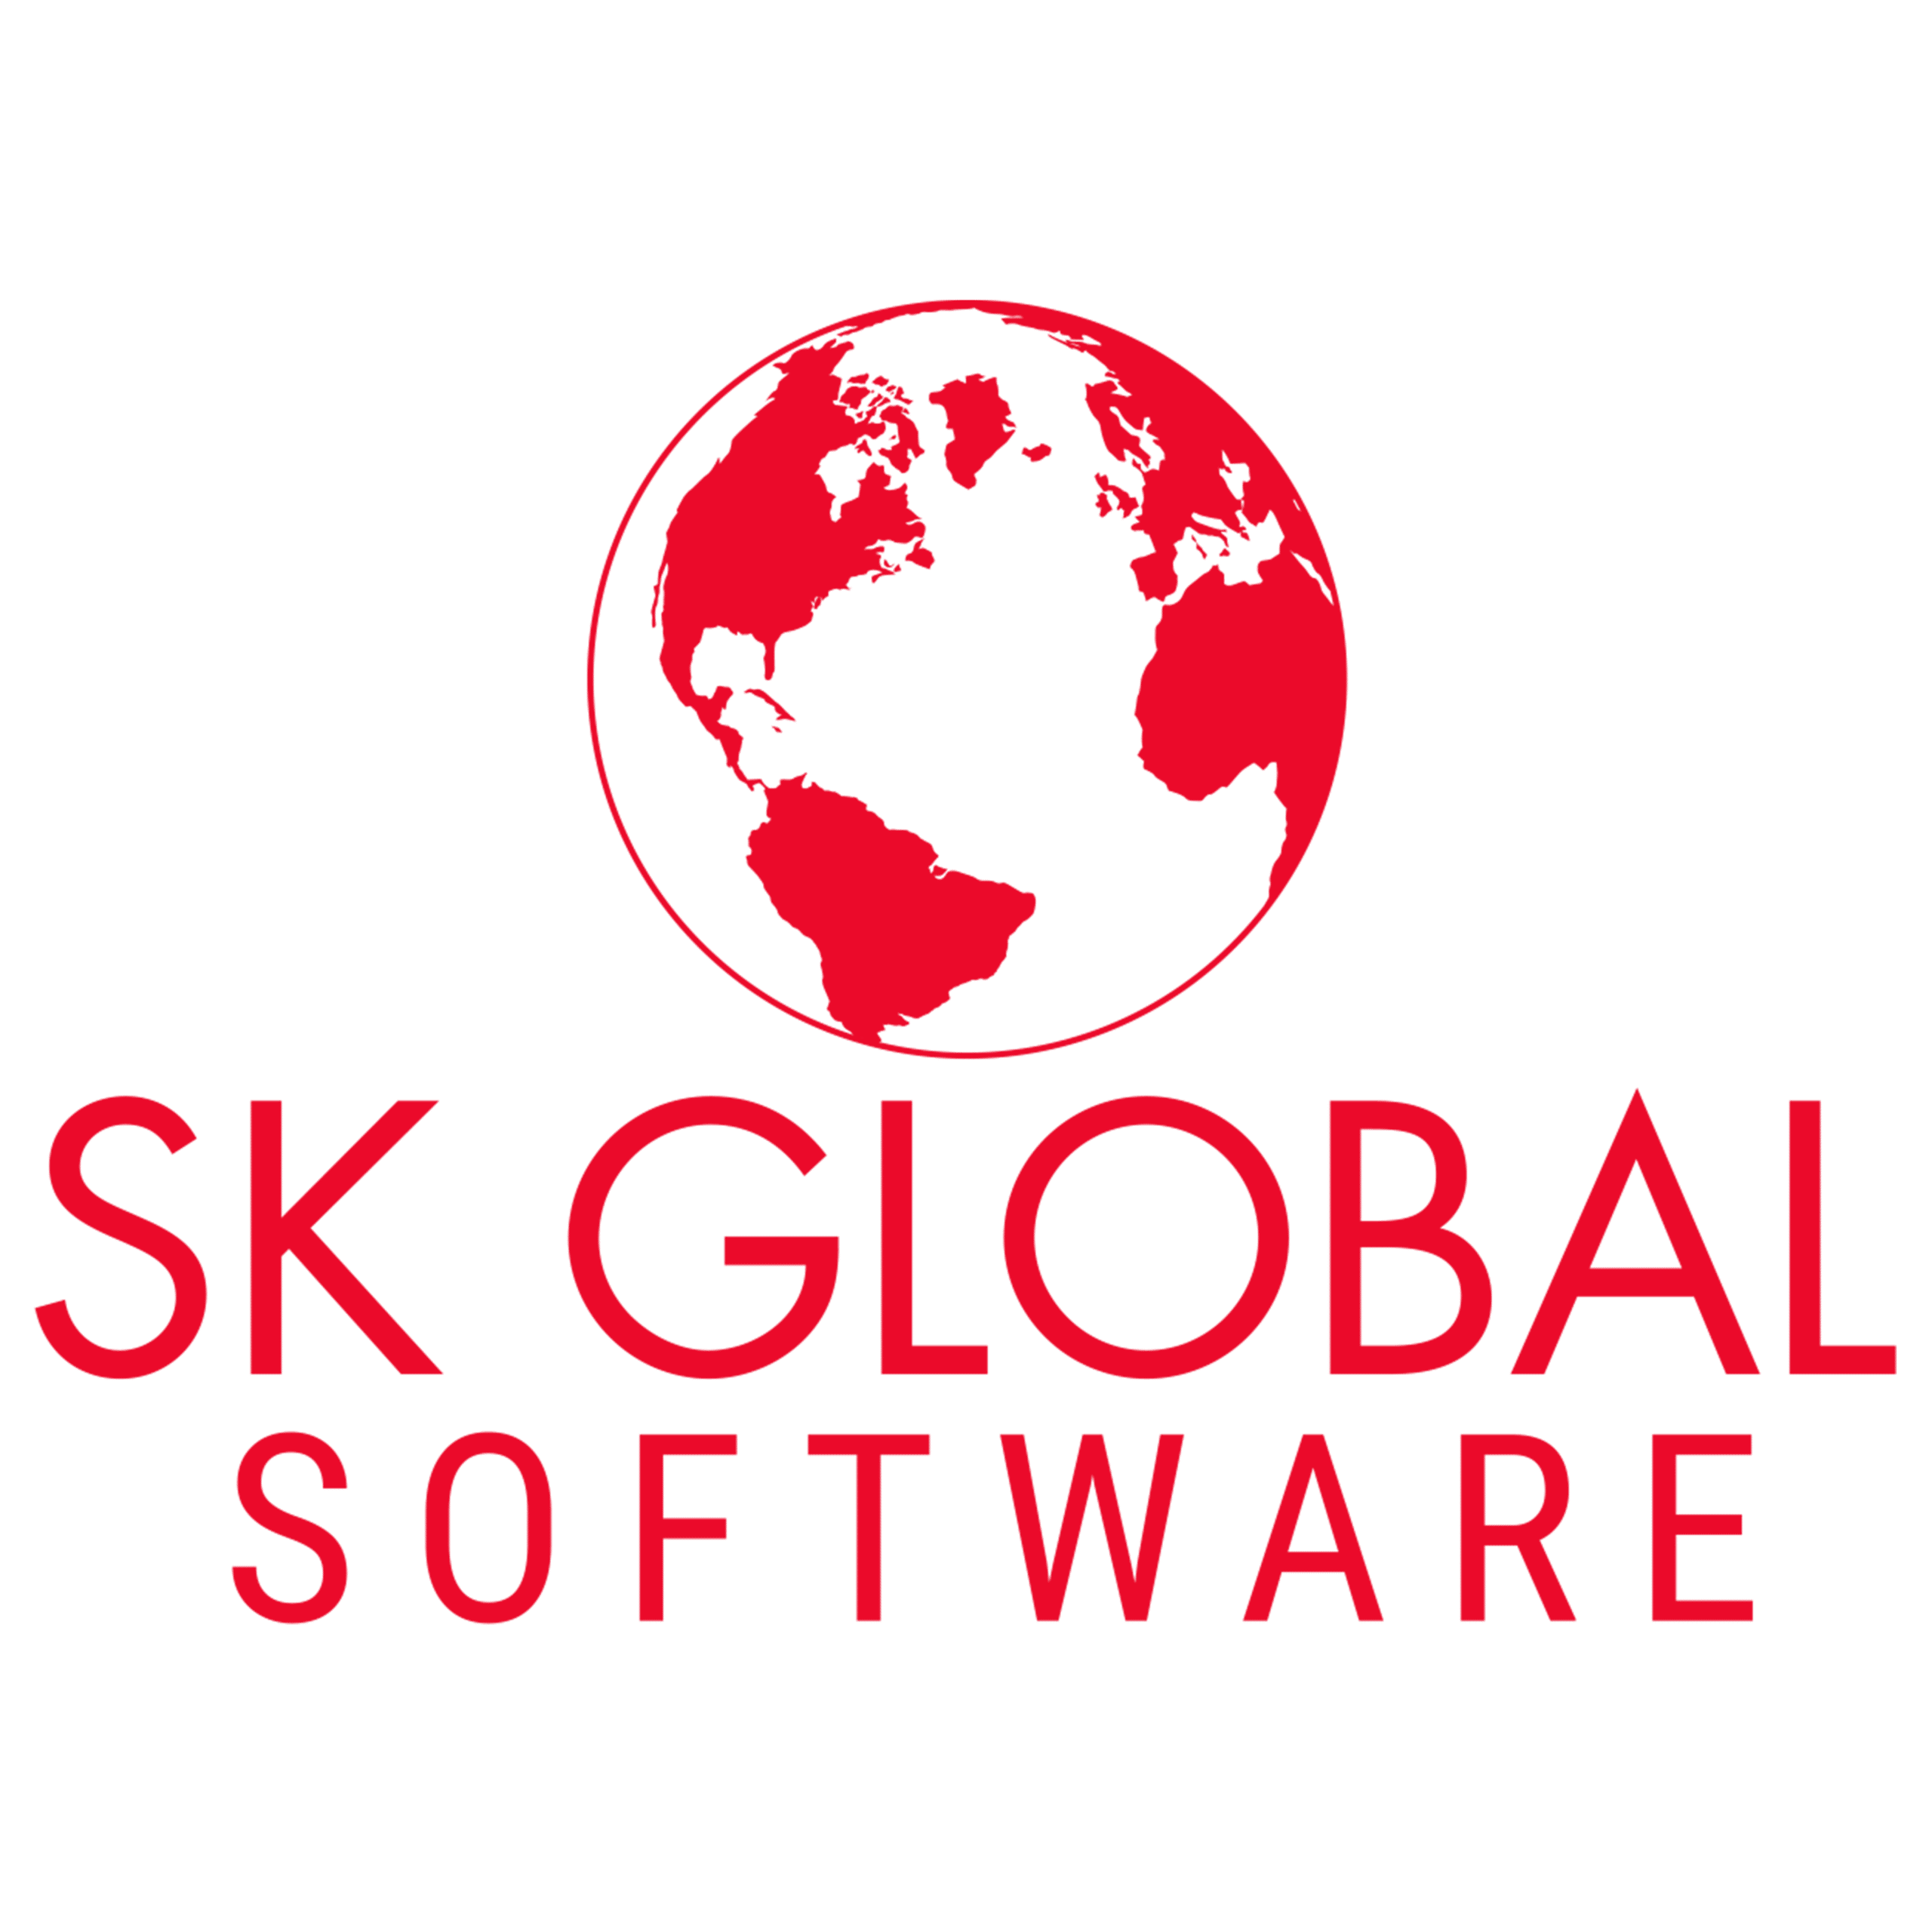 SK Global Software